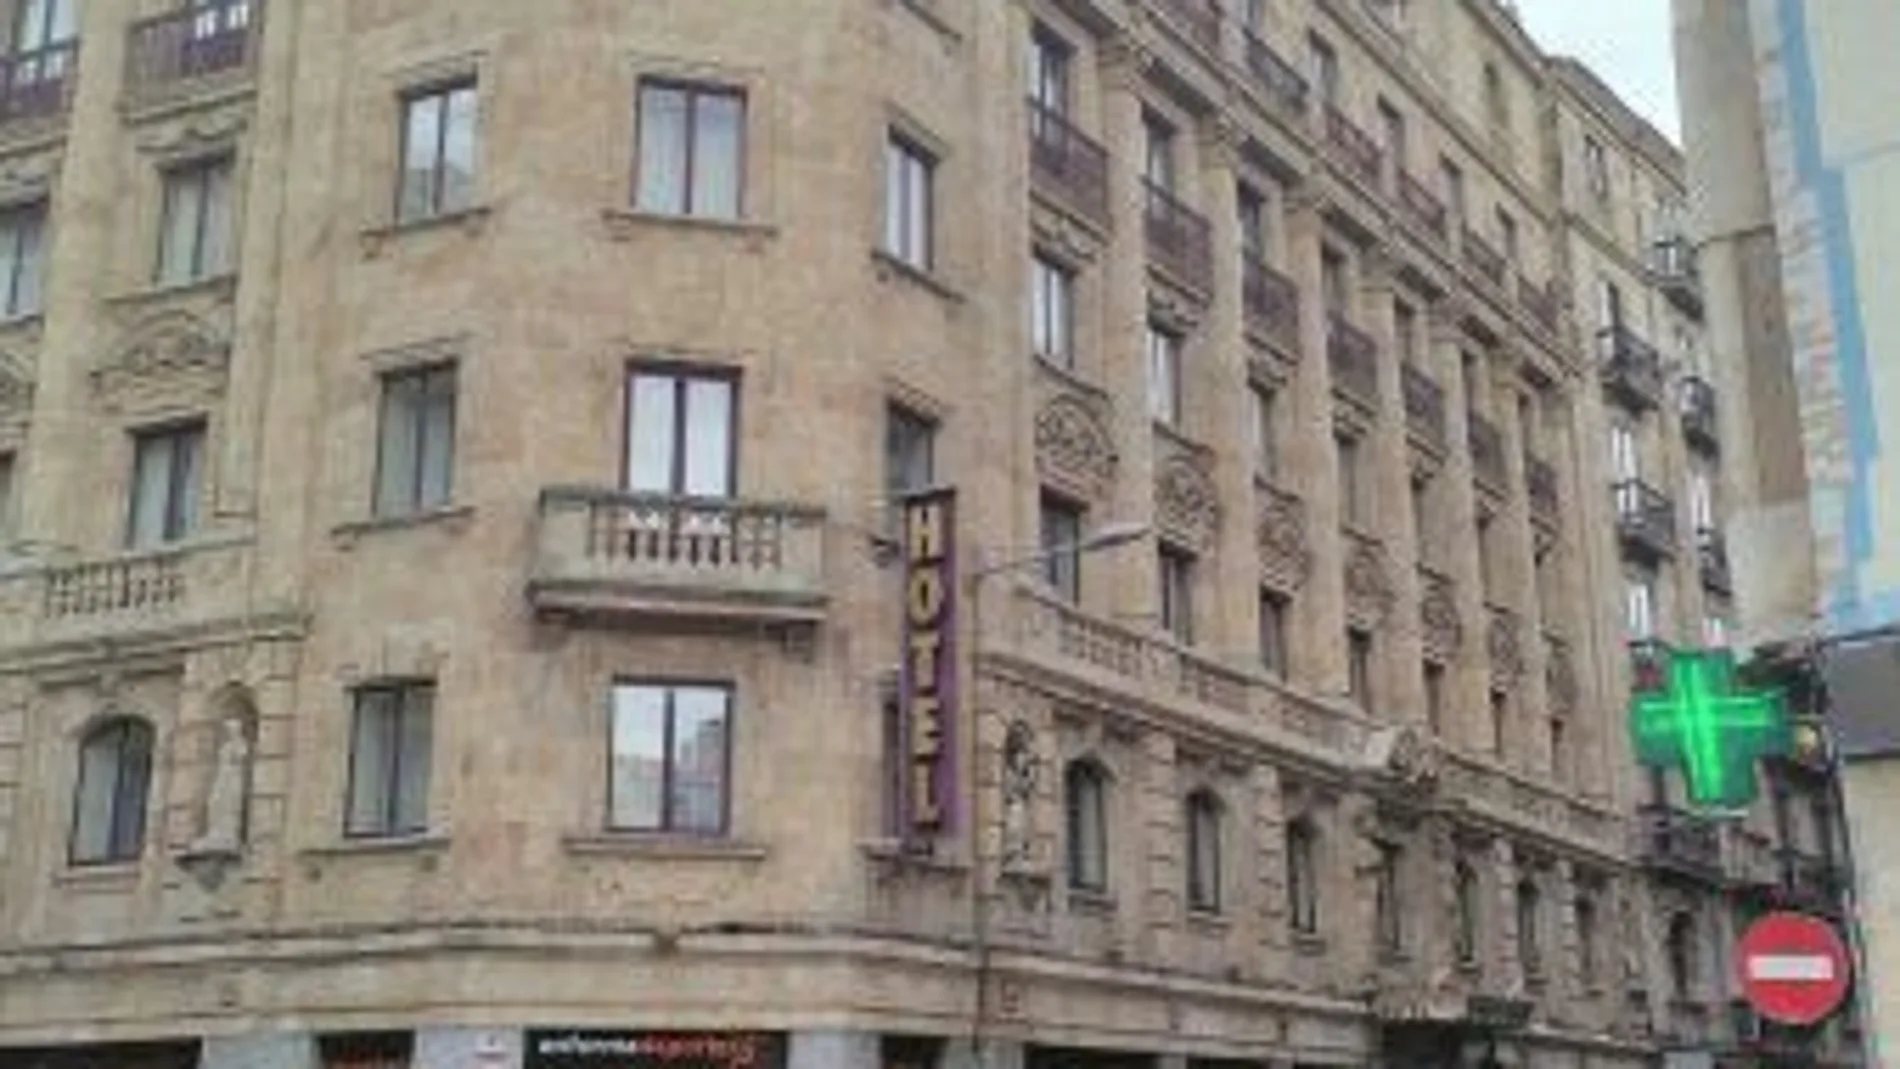 Hotel de la calle Azafranal de Salamanca por donde salieron los identificados